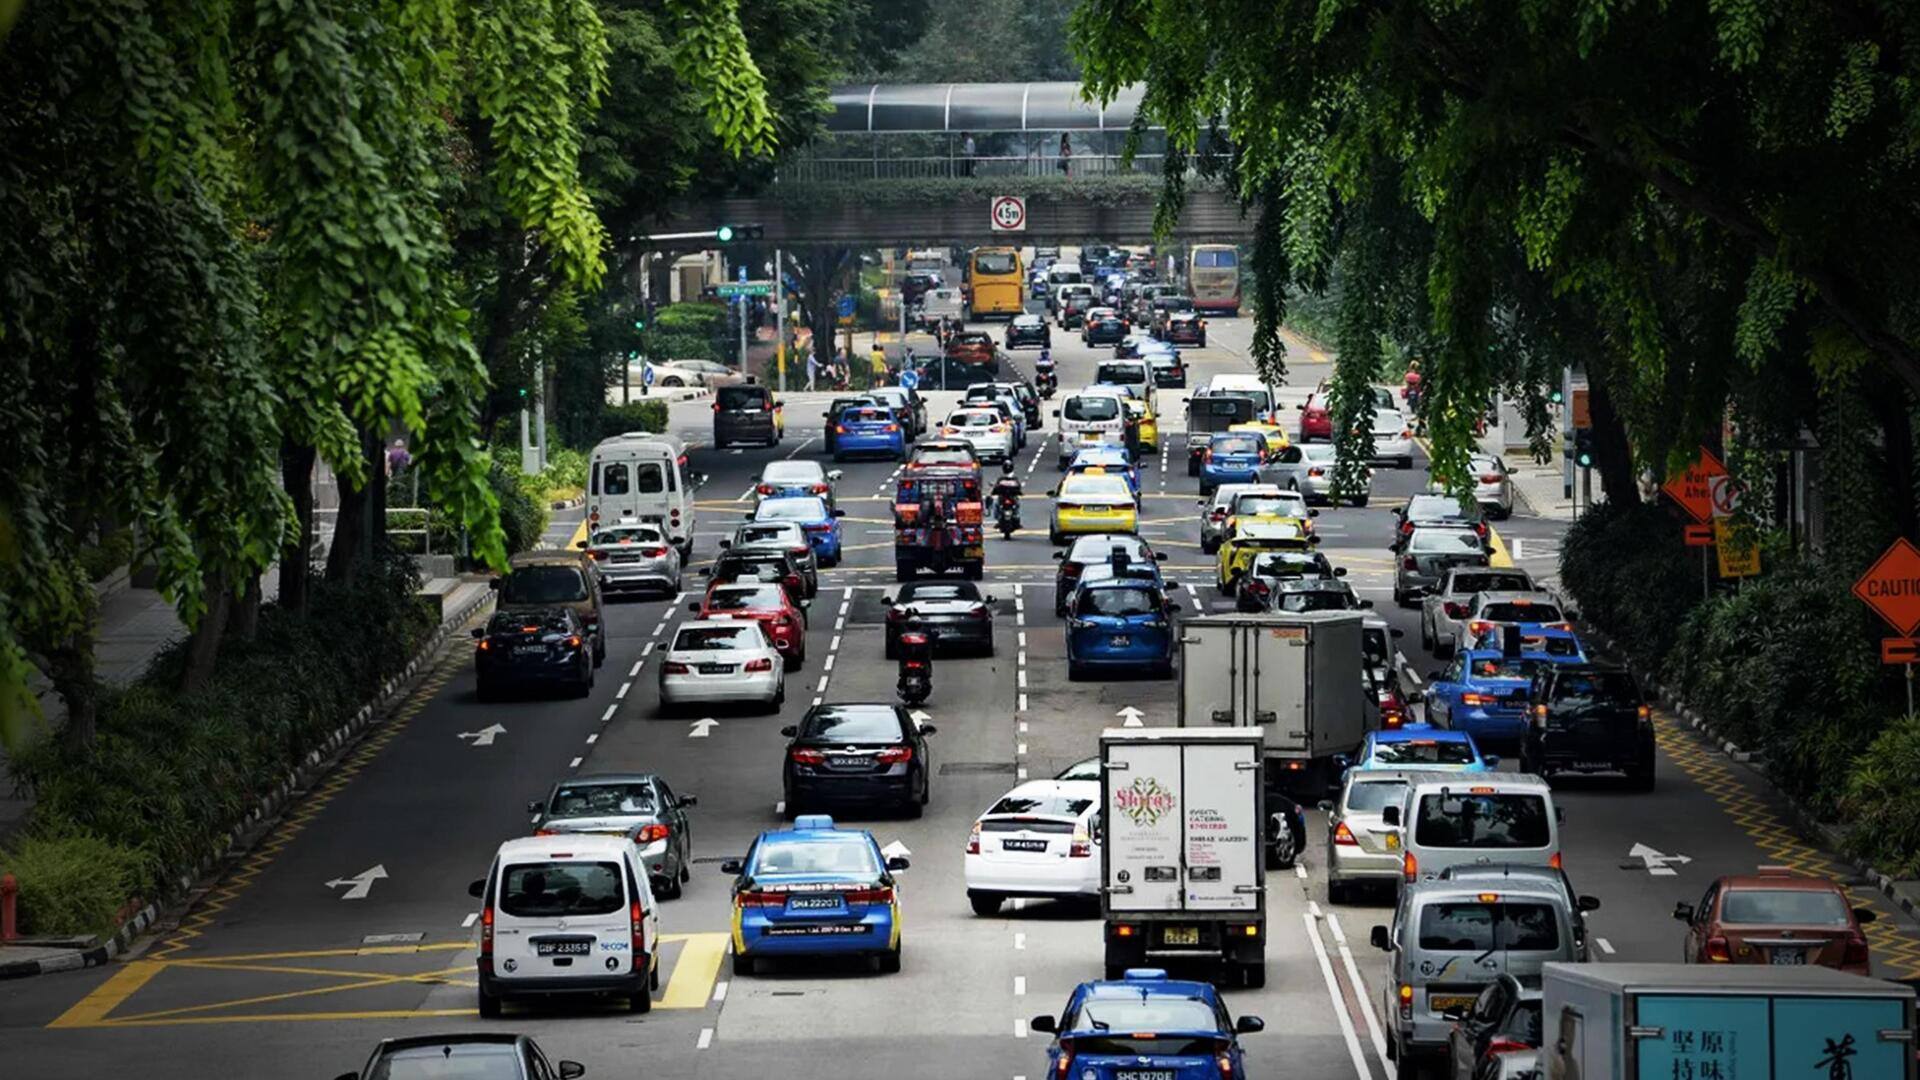 सिंगापुर: लोगों की पहुंच से बाहर हुई कार, केवल प्रमाणपत्र की कीमत 88 लाख रुपये 